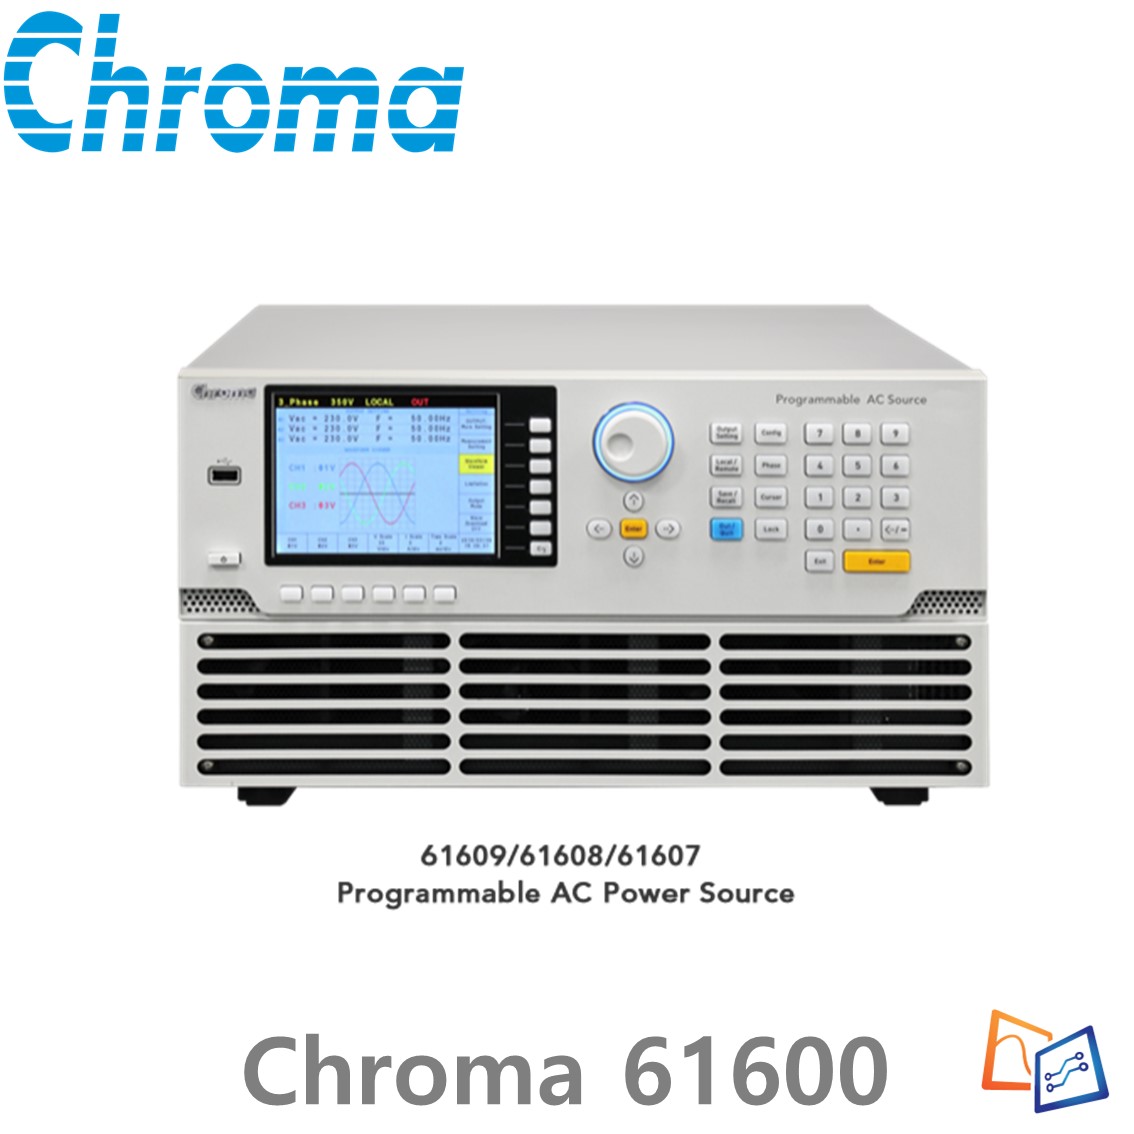 [ Chroma 61601 ] 프로그래머블 AC전원 공급기 크로마 61600 series